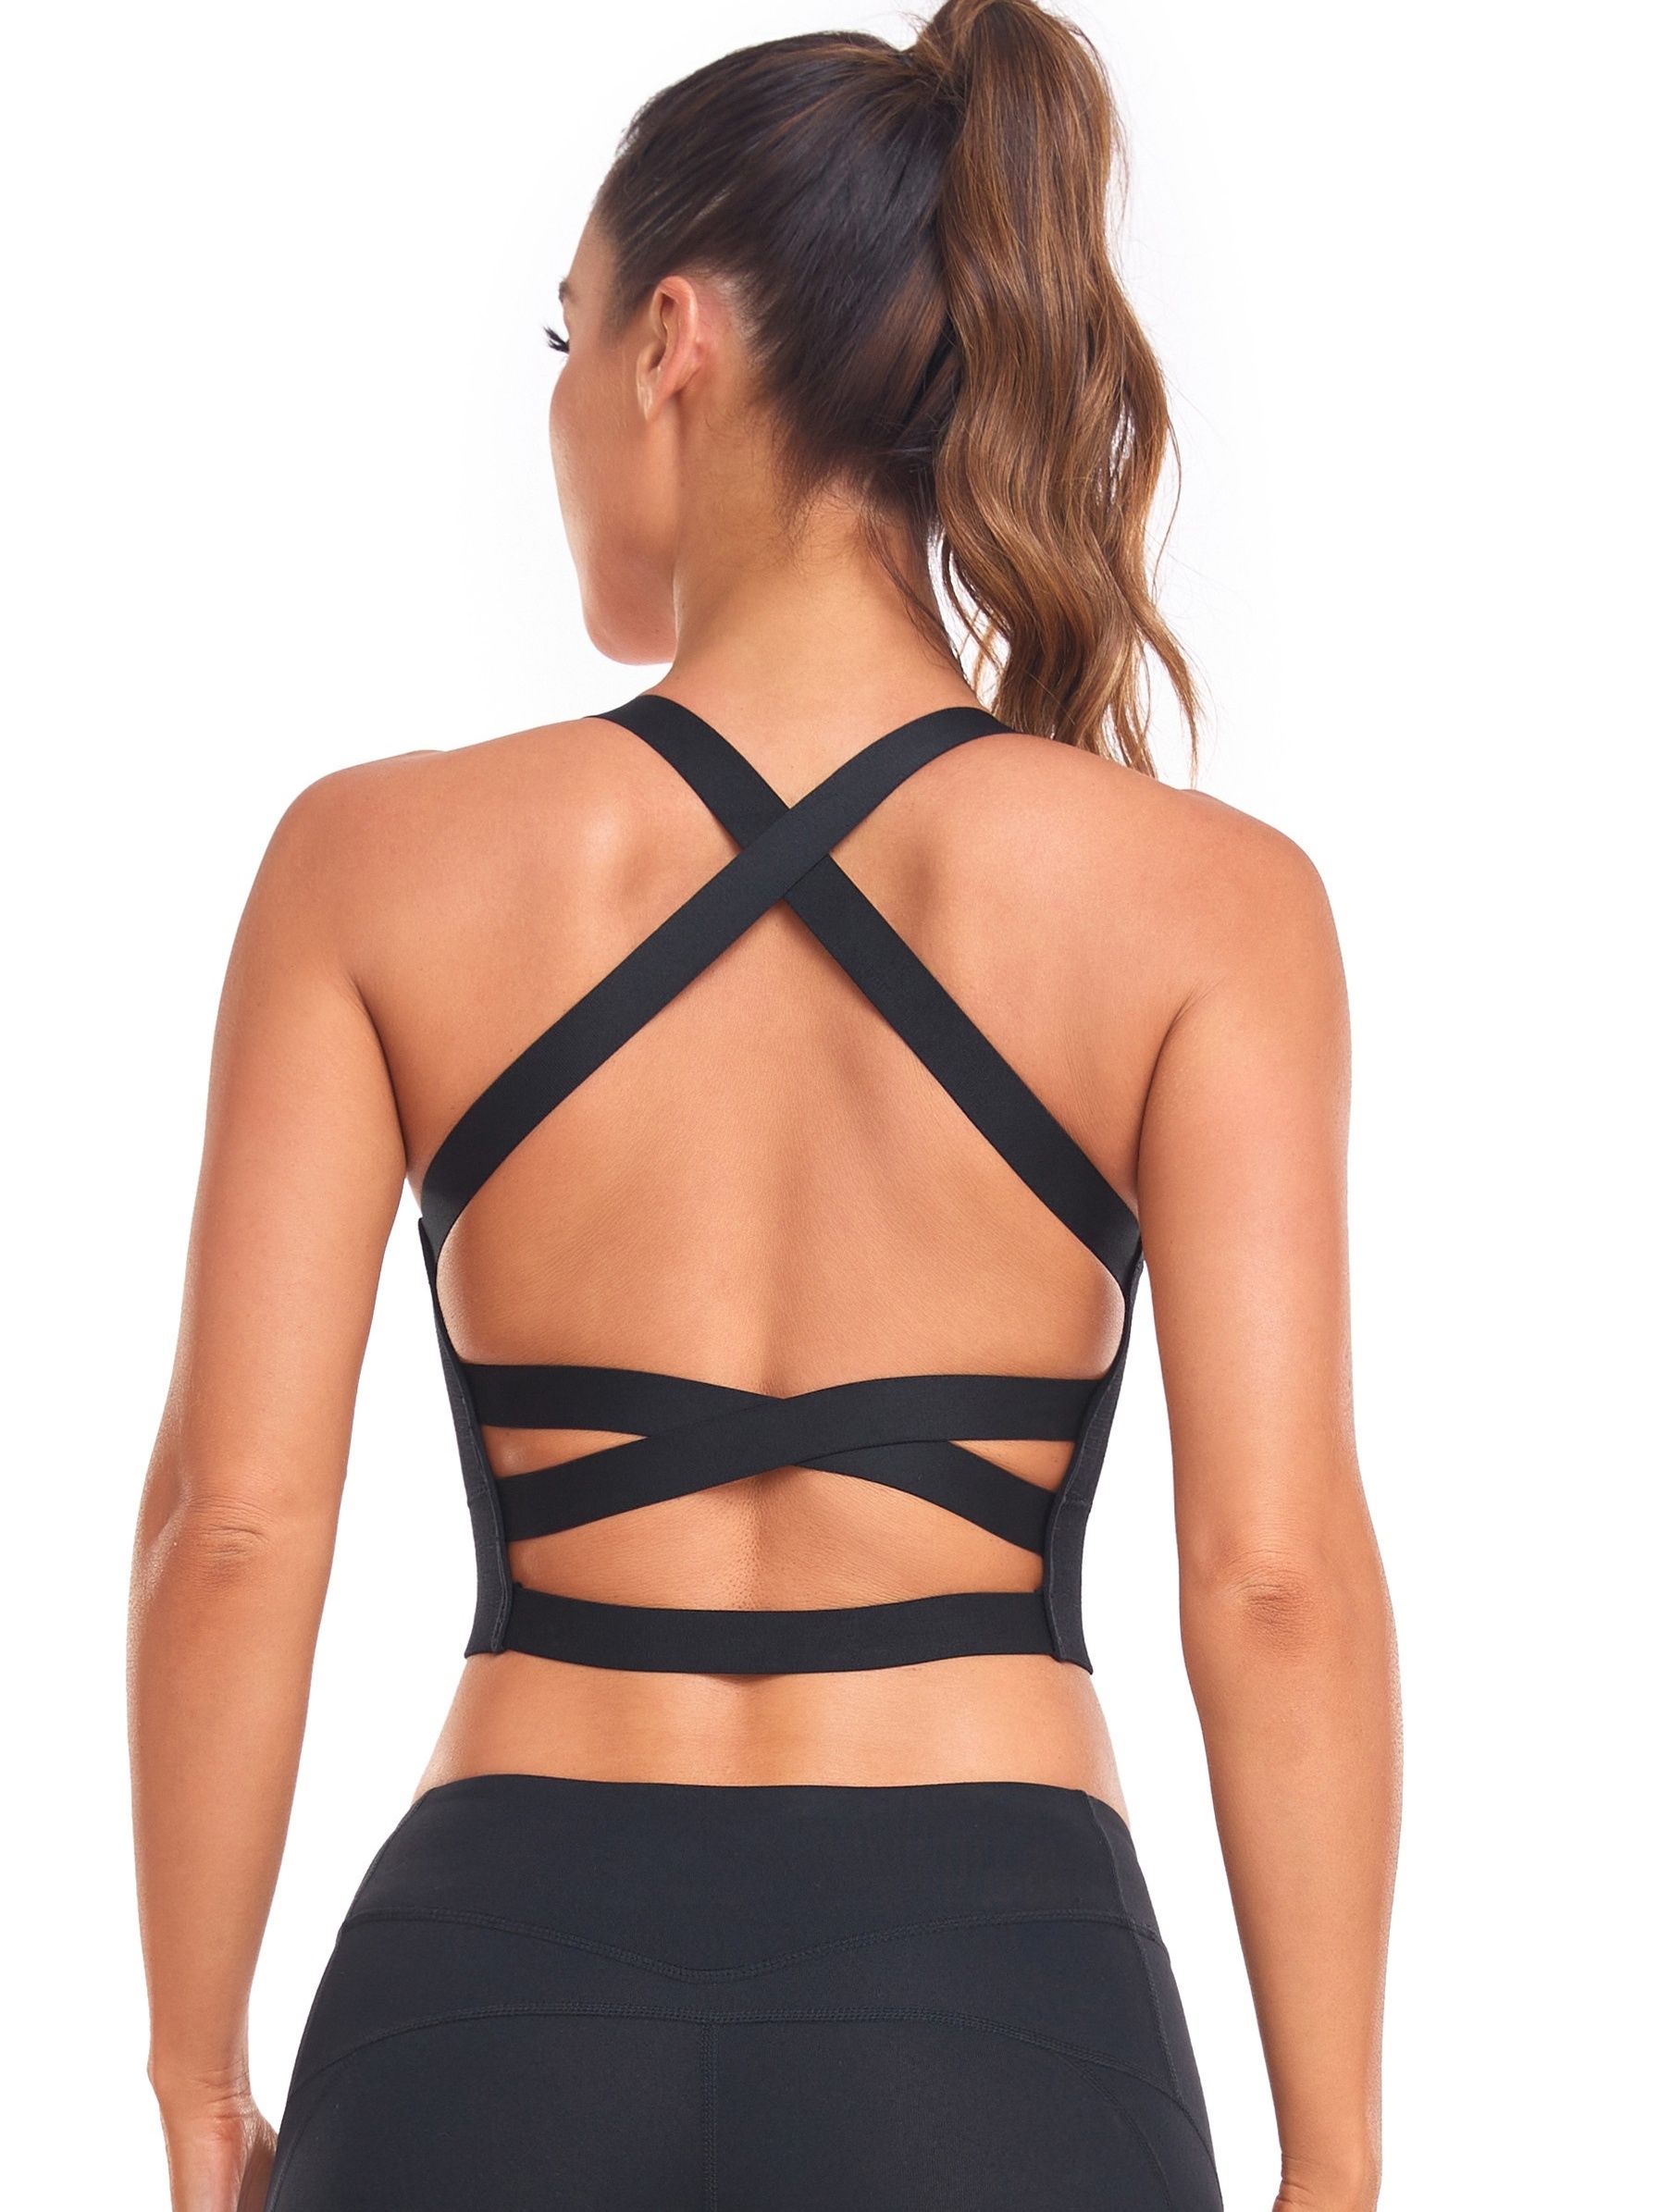 Damen Komfort Racerback Sport BH Bra Top für Yoga Fitness sexy Netz  Unterwäsche